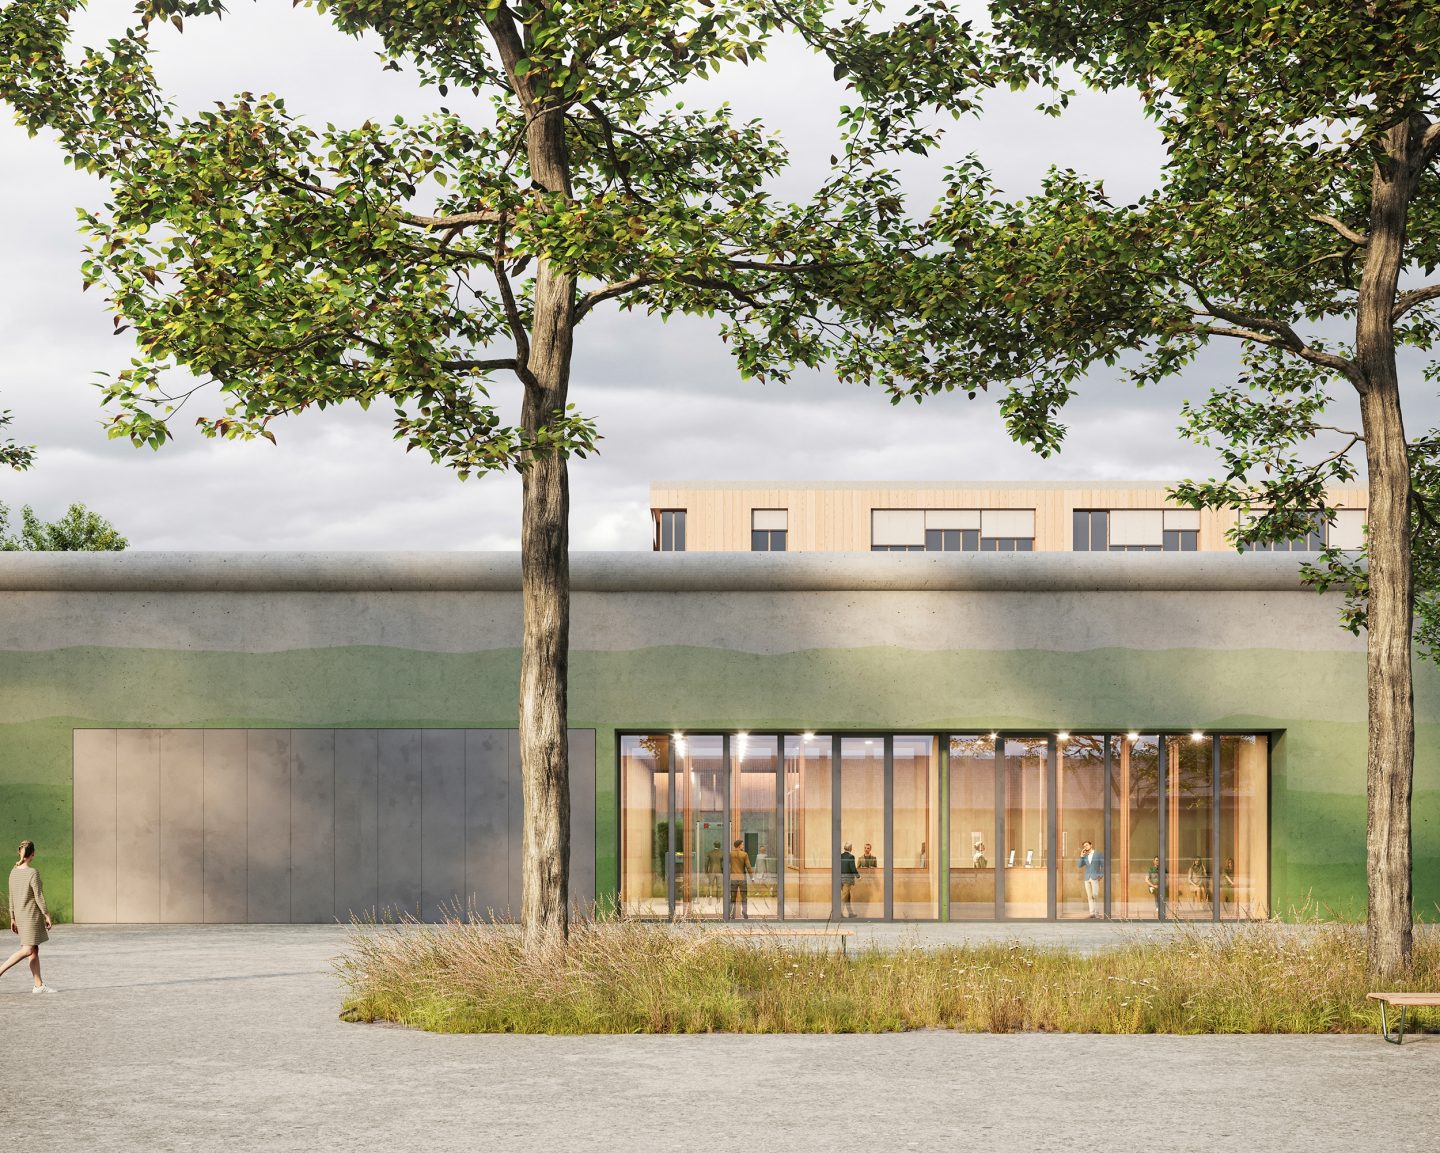 Pénitentiaire des Grands-Marais, Orbe, VD. Hildebrand Studios AG, Architecture and Urban Design in Zurich, Switzerland